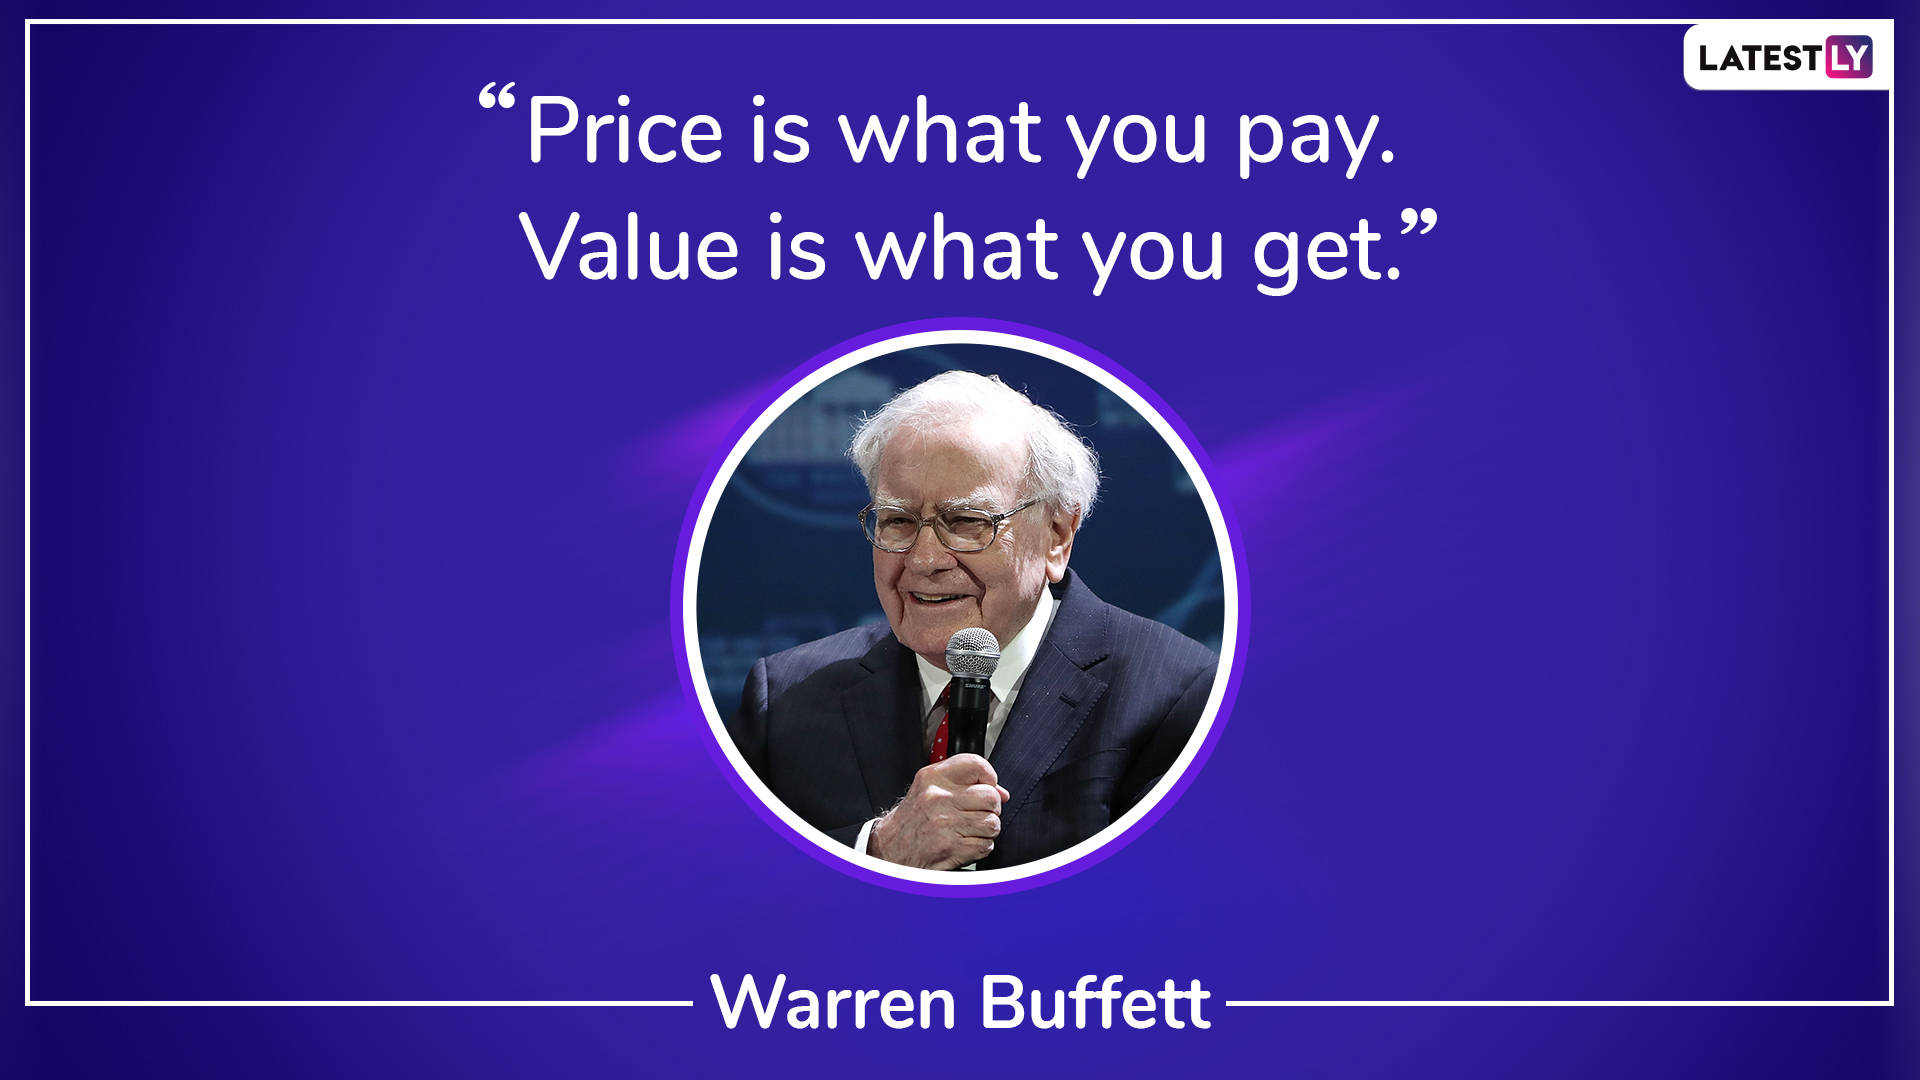 warren buffett quotes success